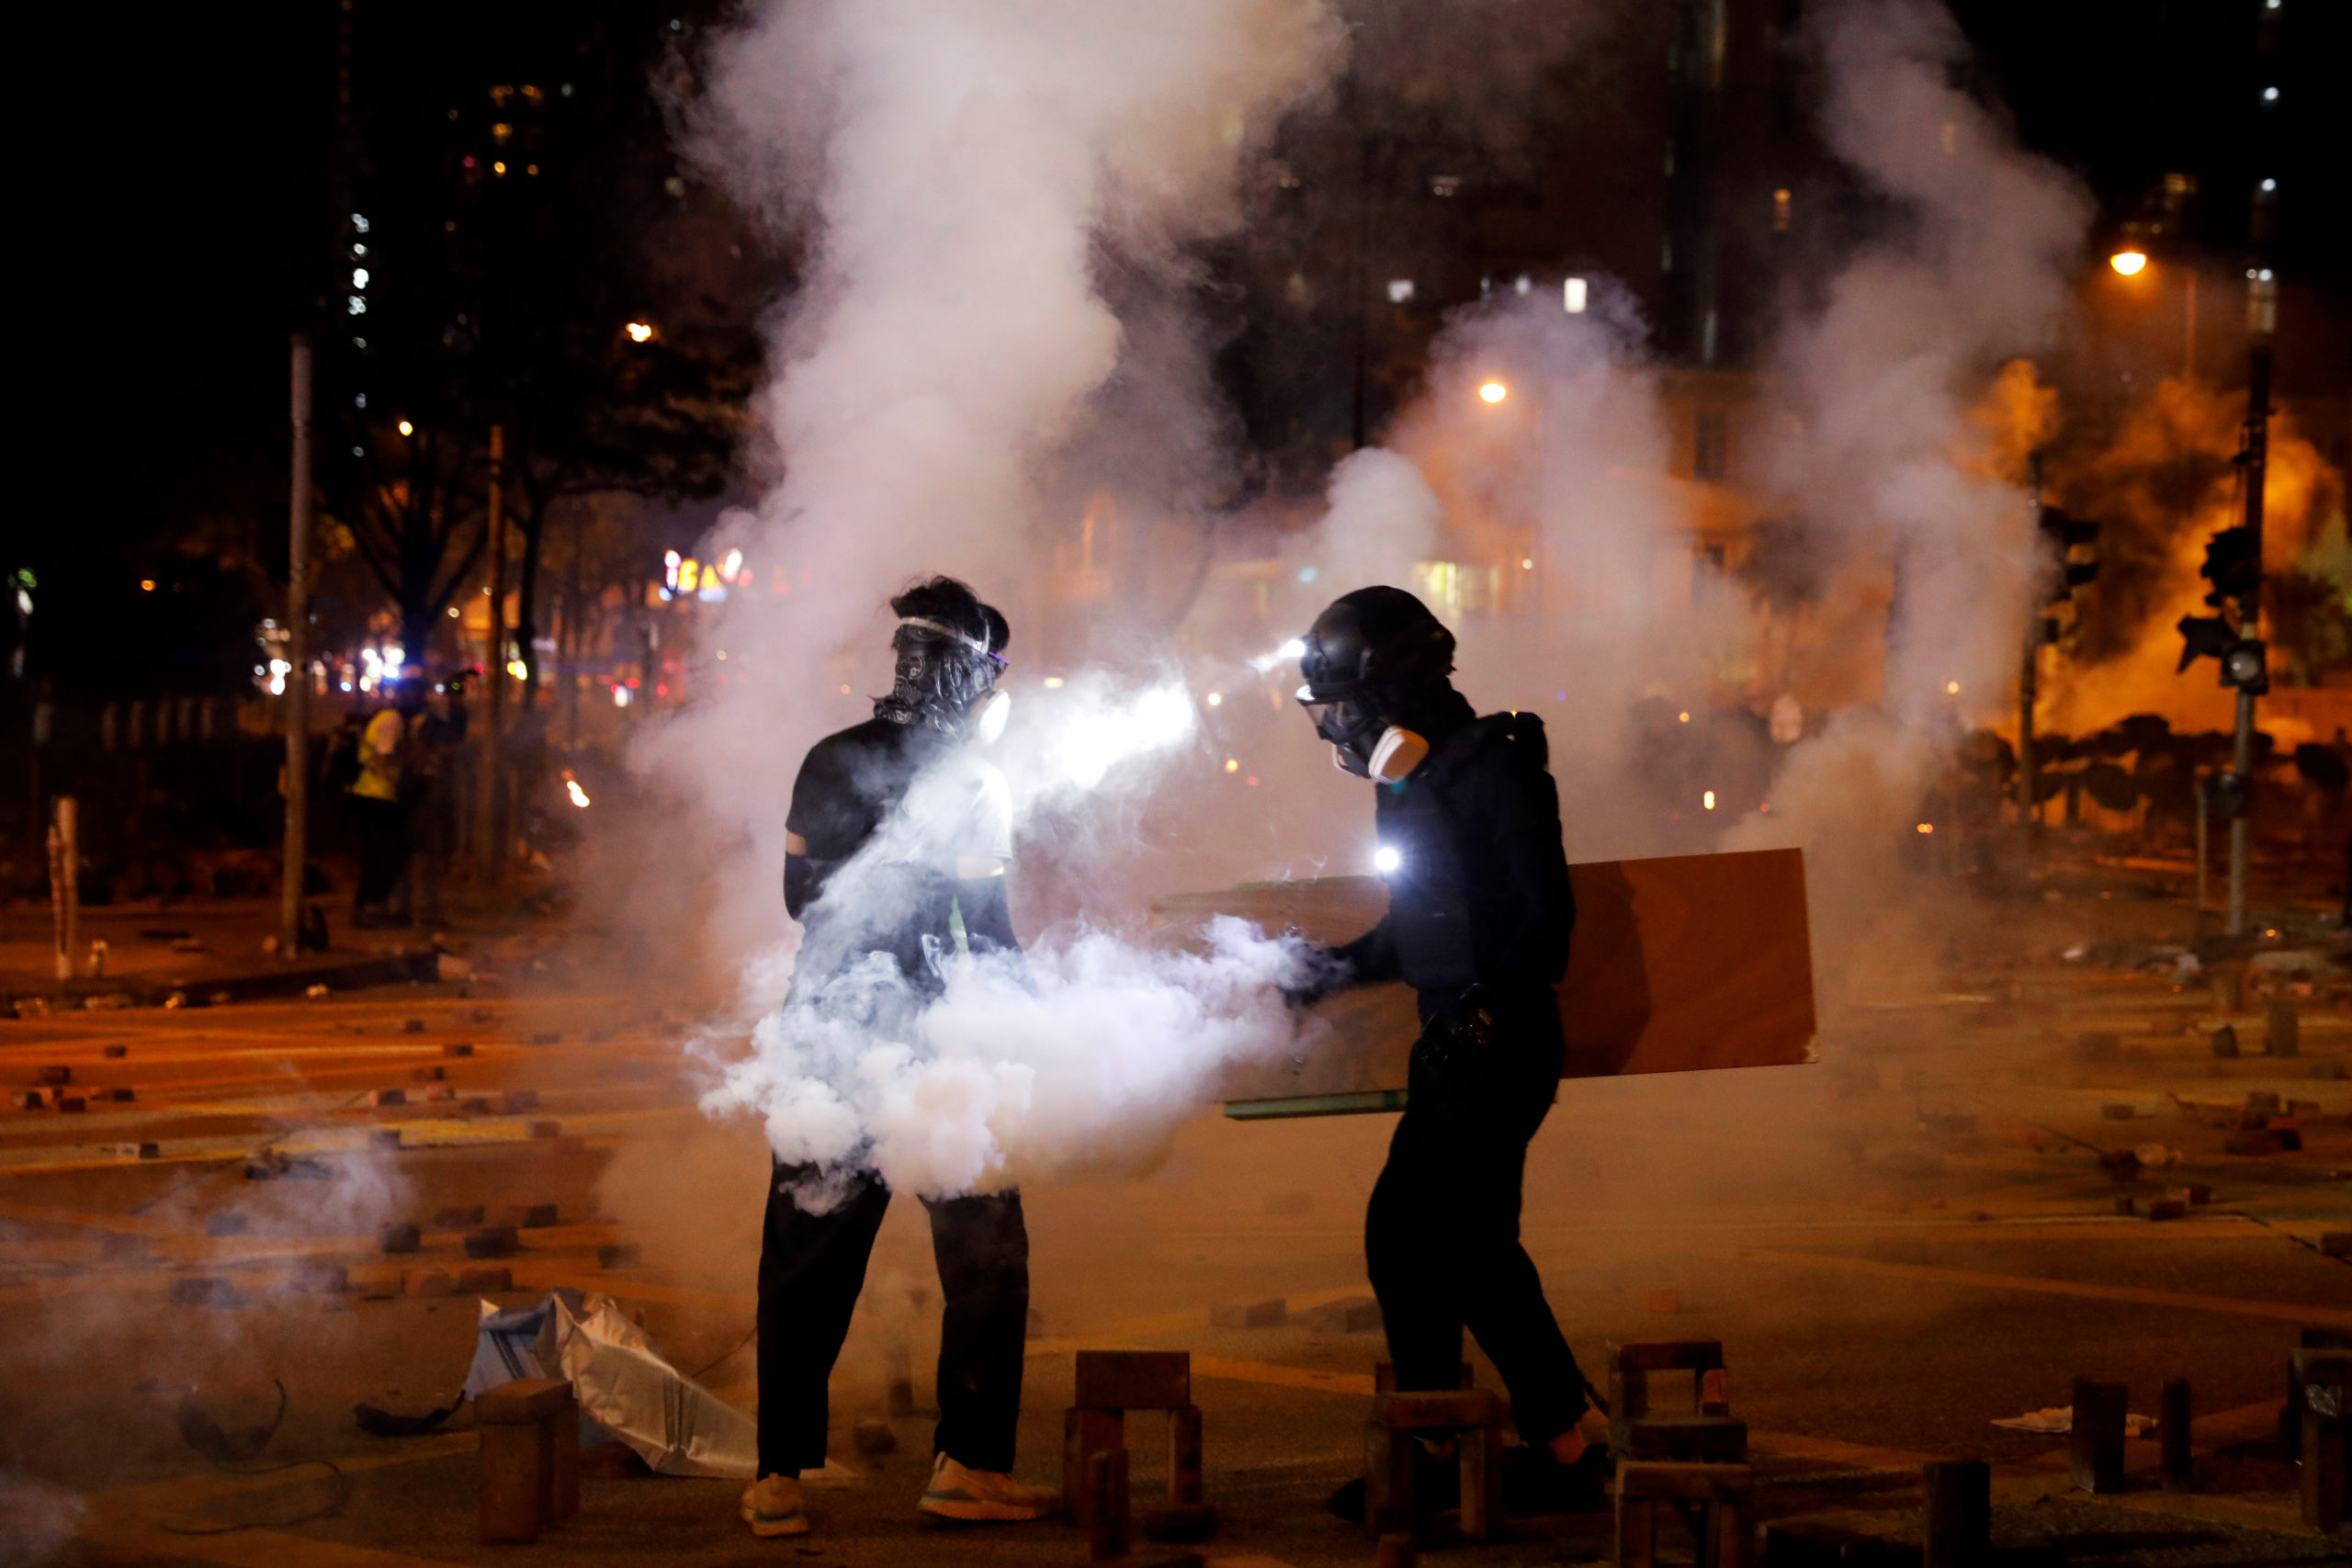 La police de Hong Kong a tiré des cartouches de gaz lacrymogène contre des manifestants leur jetant des cocktails Molotov ou d'autres projectiles samedi devant l'Université polytechnique de la ville, quelques heures après une manifestation pro-chinoise. /Photo prise le 16 novembre 2019/REUTERS/Adnan Abidi